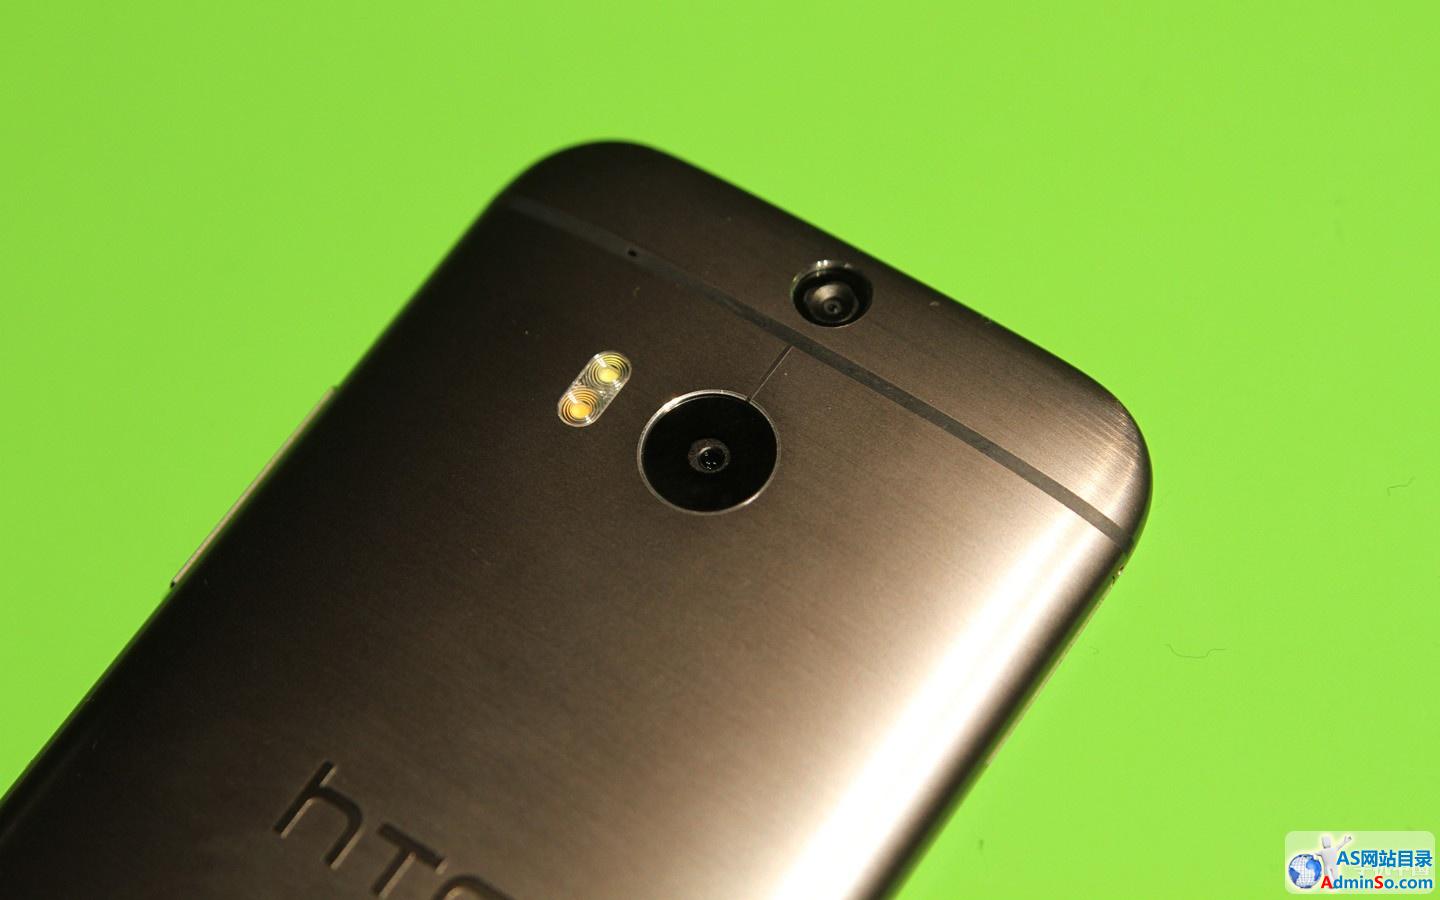 金属机身光场相机 HTC One M8现场体验 